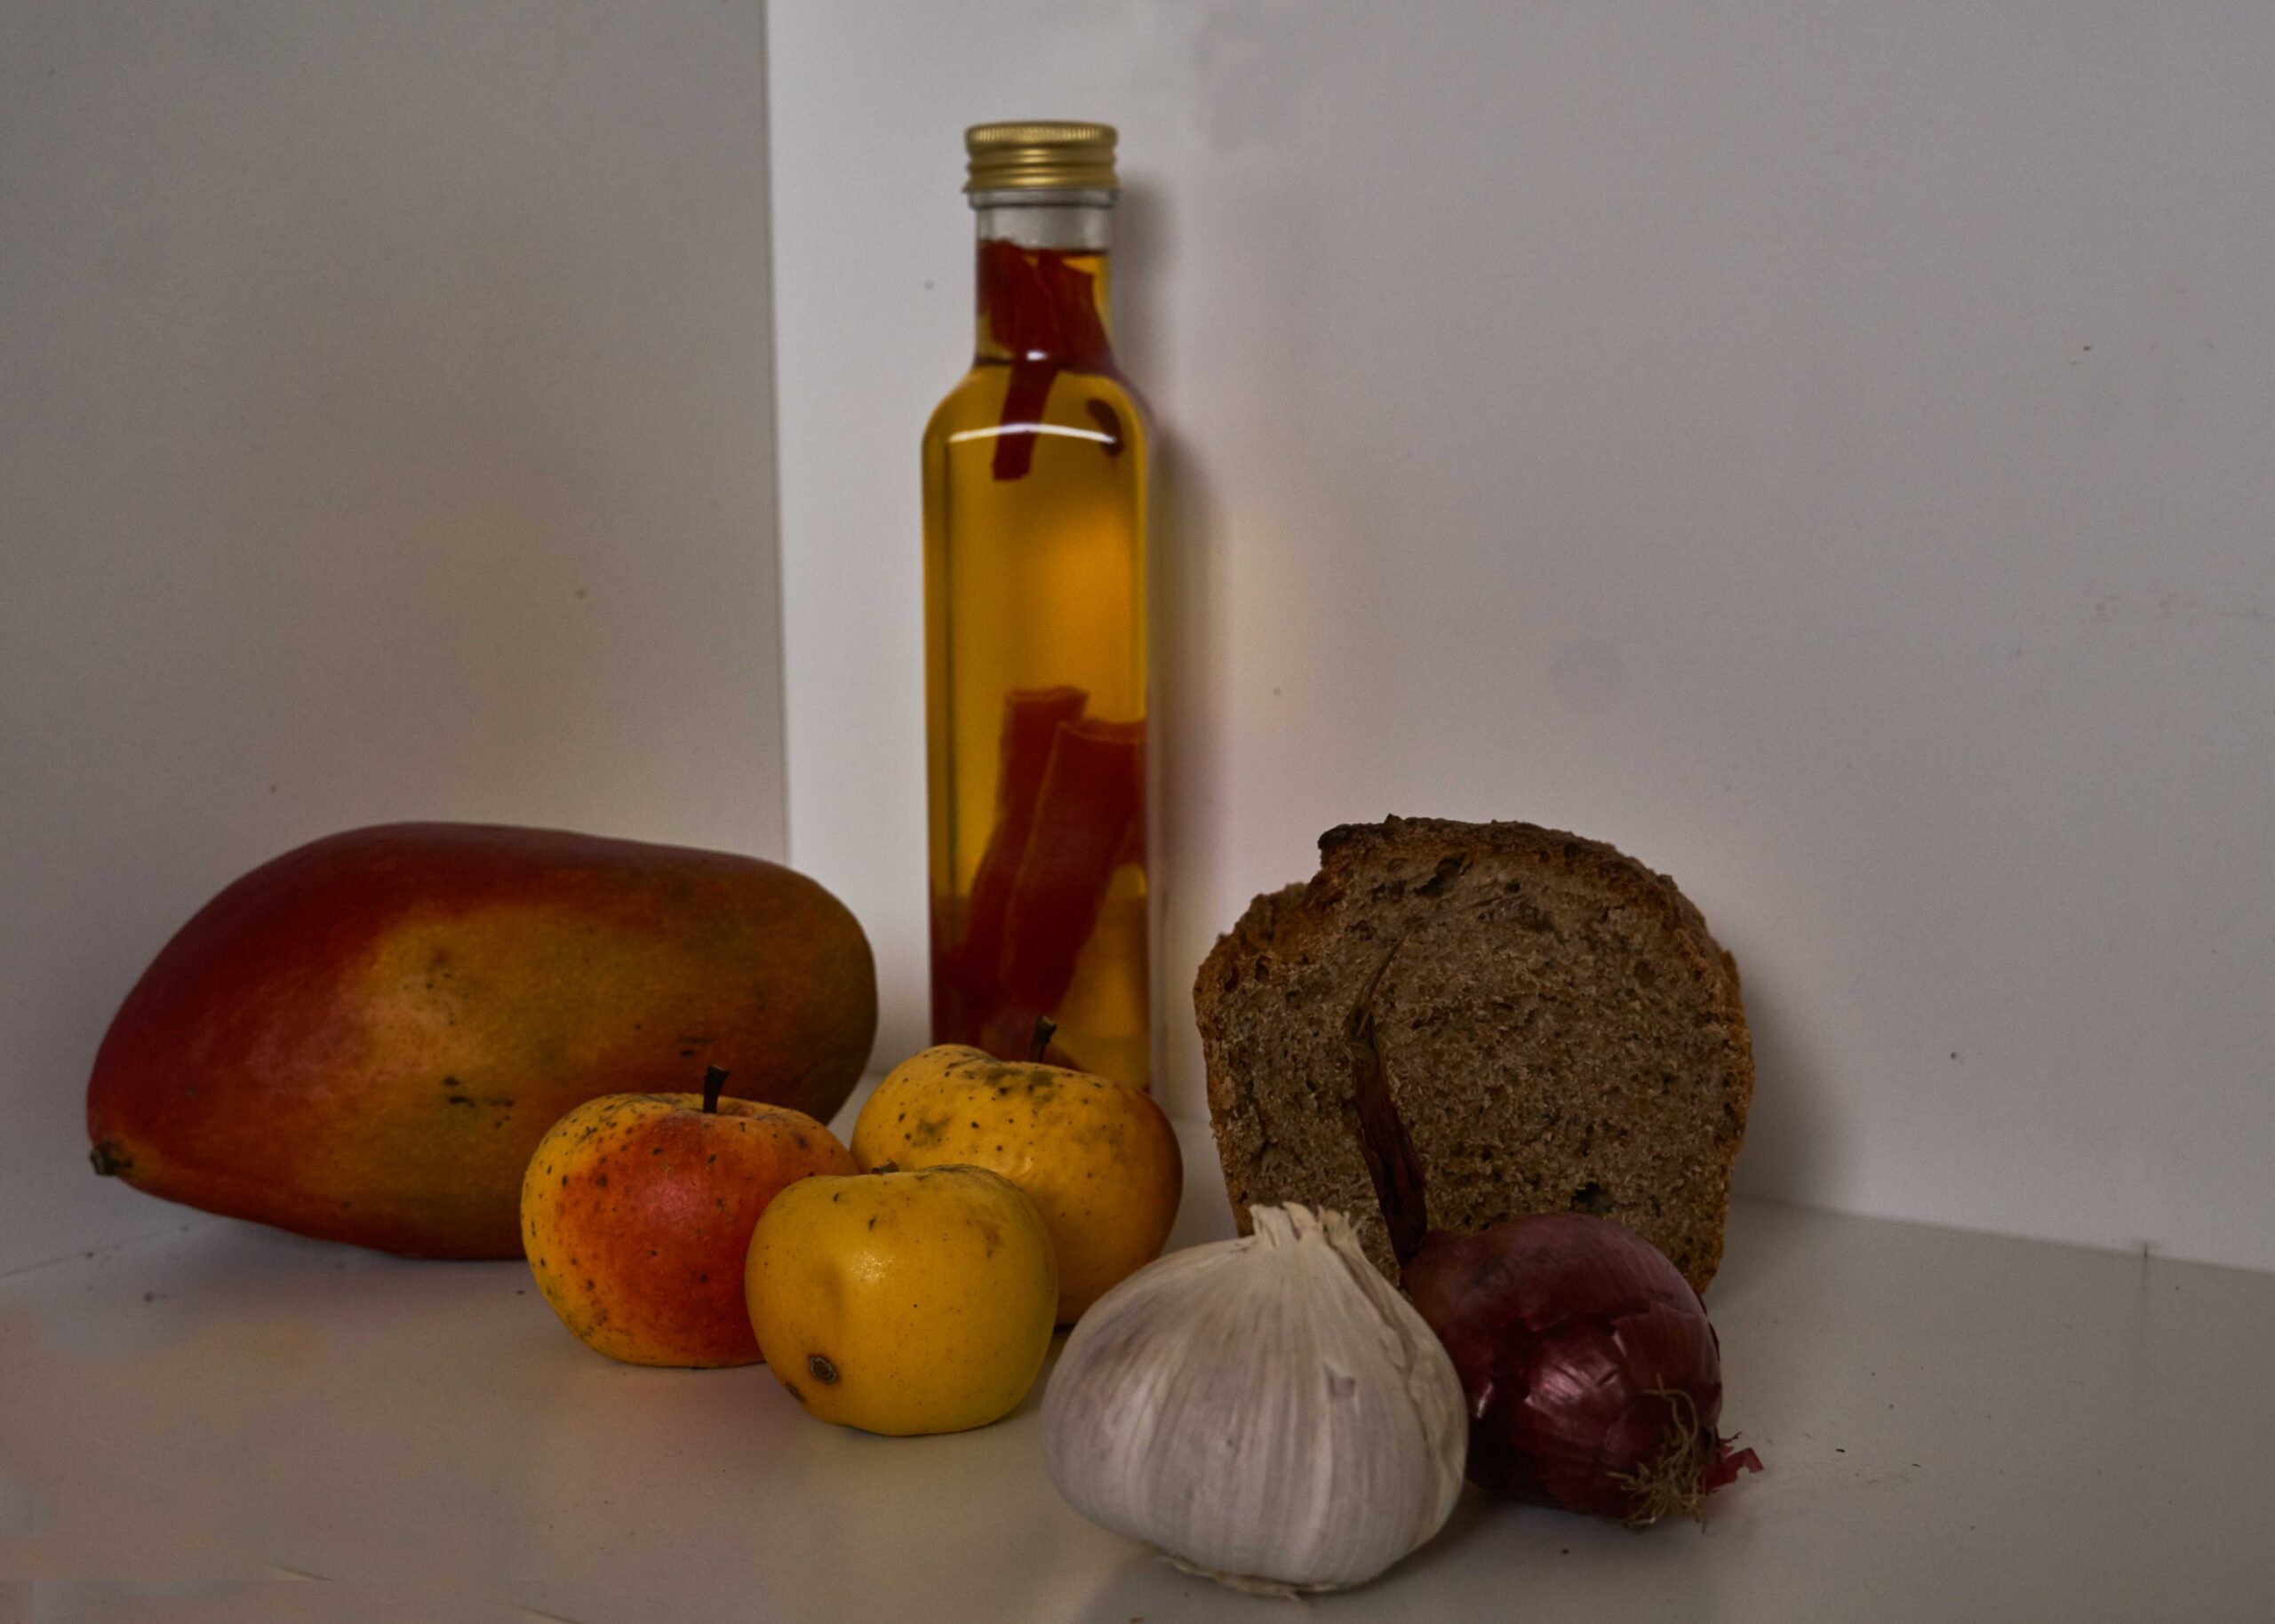 Essgewohnheiten im Urin, Äpfel, Mango, Öl, Brot, Knoblauch, Zwiebel